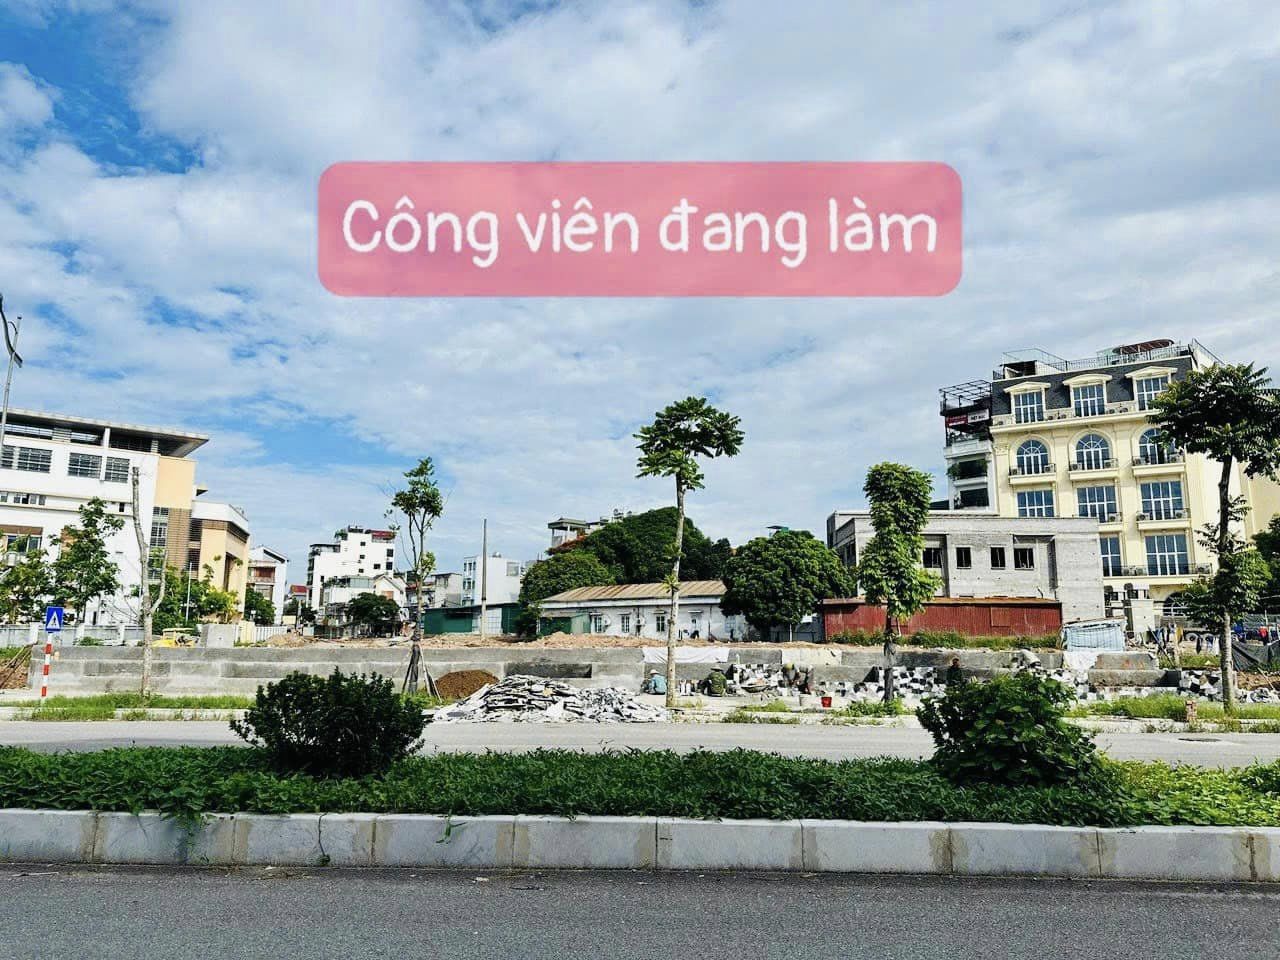 Bán đất quận Long Biên thành phố Hà Nội, giá 265 triệu/m2